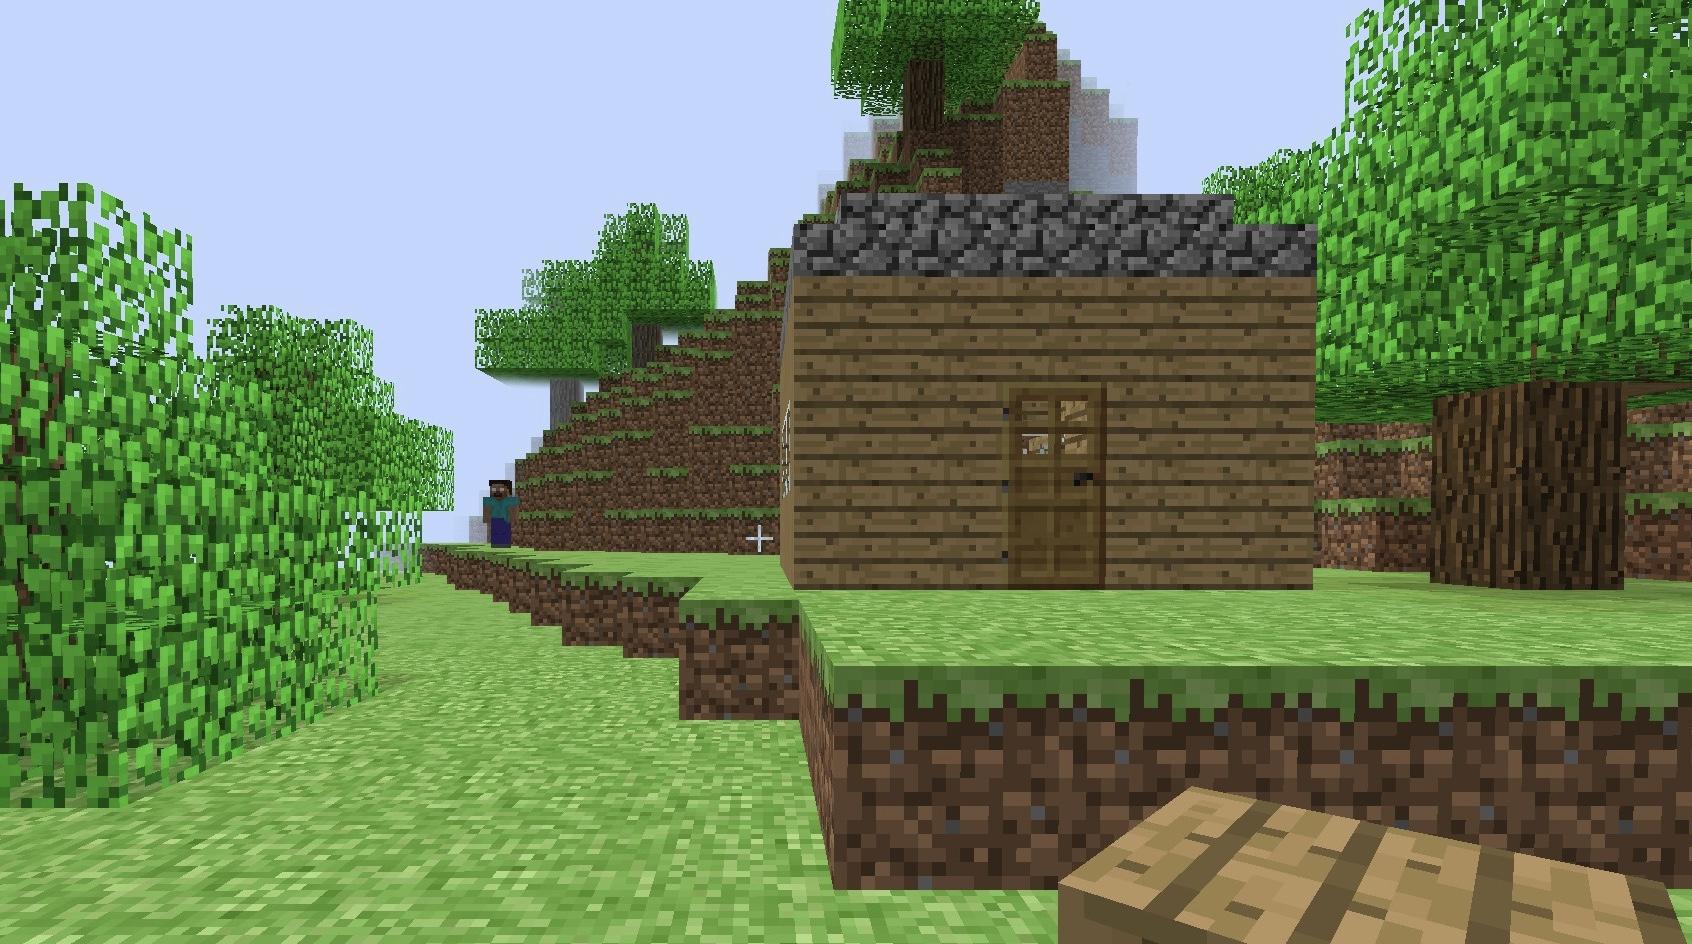 Minecraft Memes - "Finally a decent shack!"